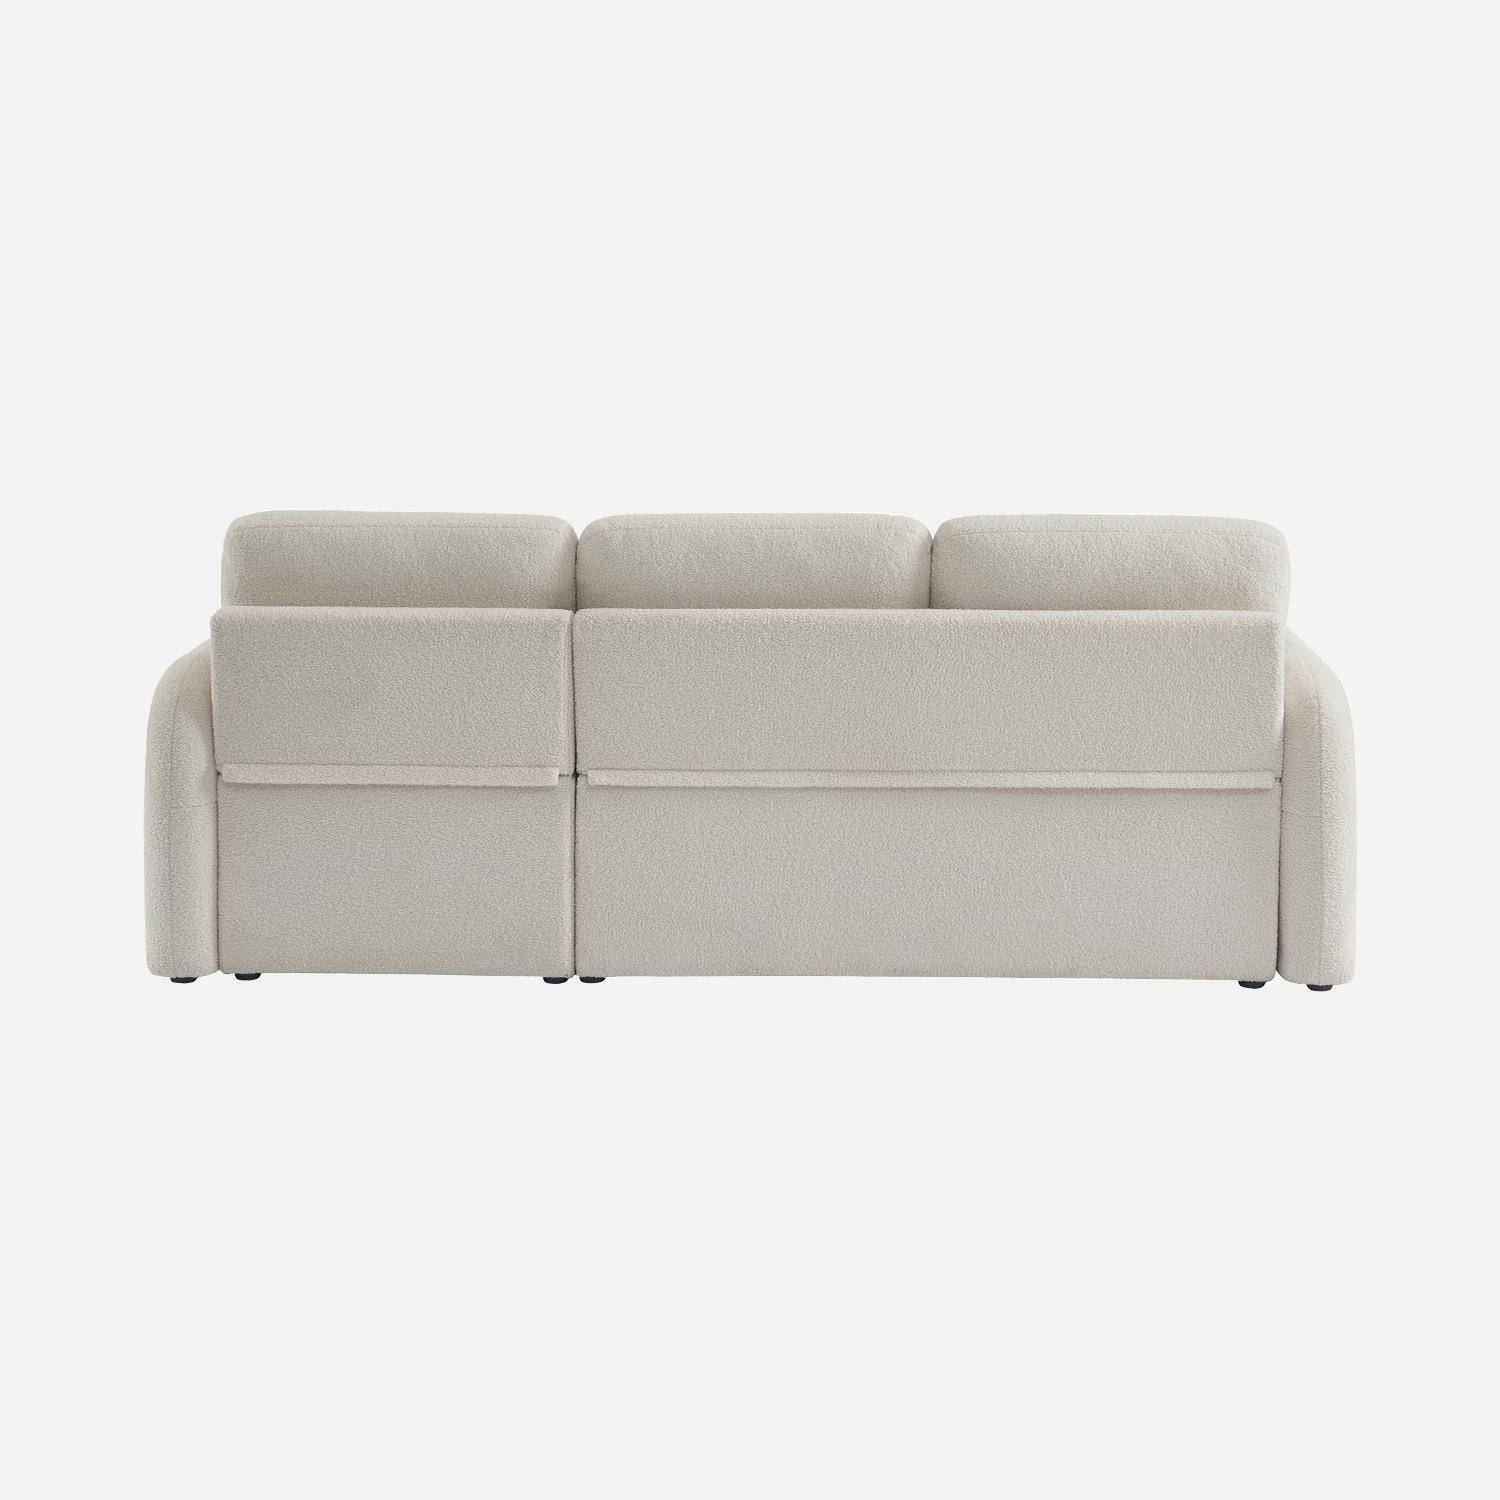 Sofá cama esquinero de 3 plazas en tejido borreguito blanco, sillón esquinero reversible, caja de almacenaje, Milano,sweeek,Photo6